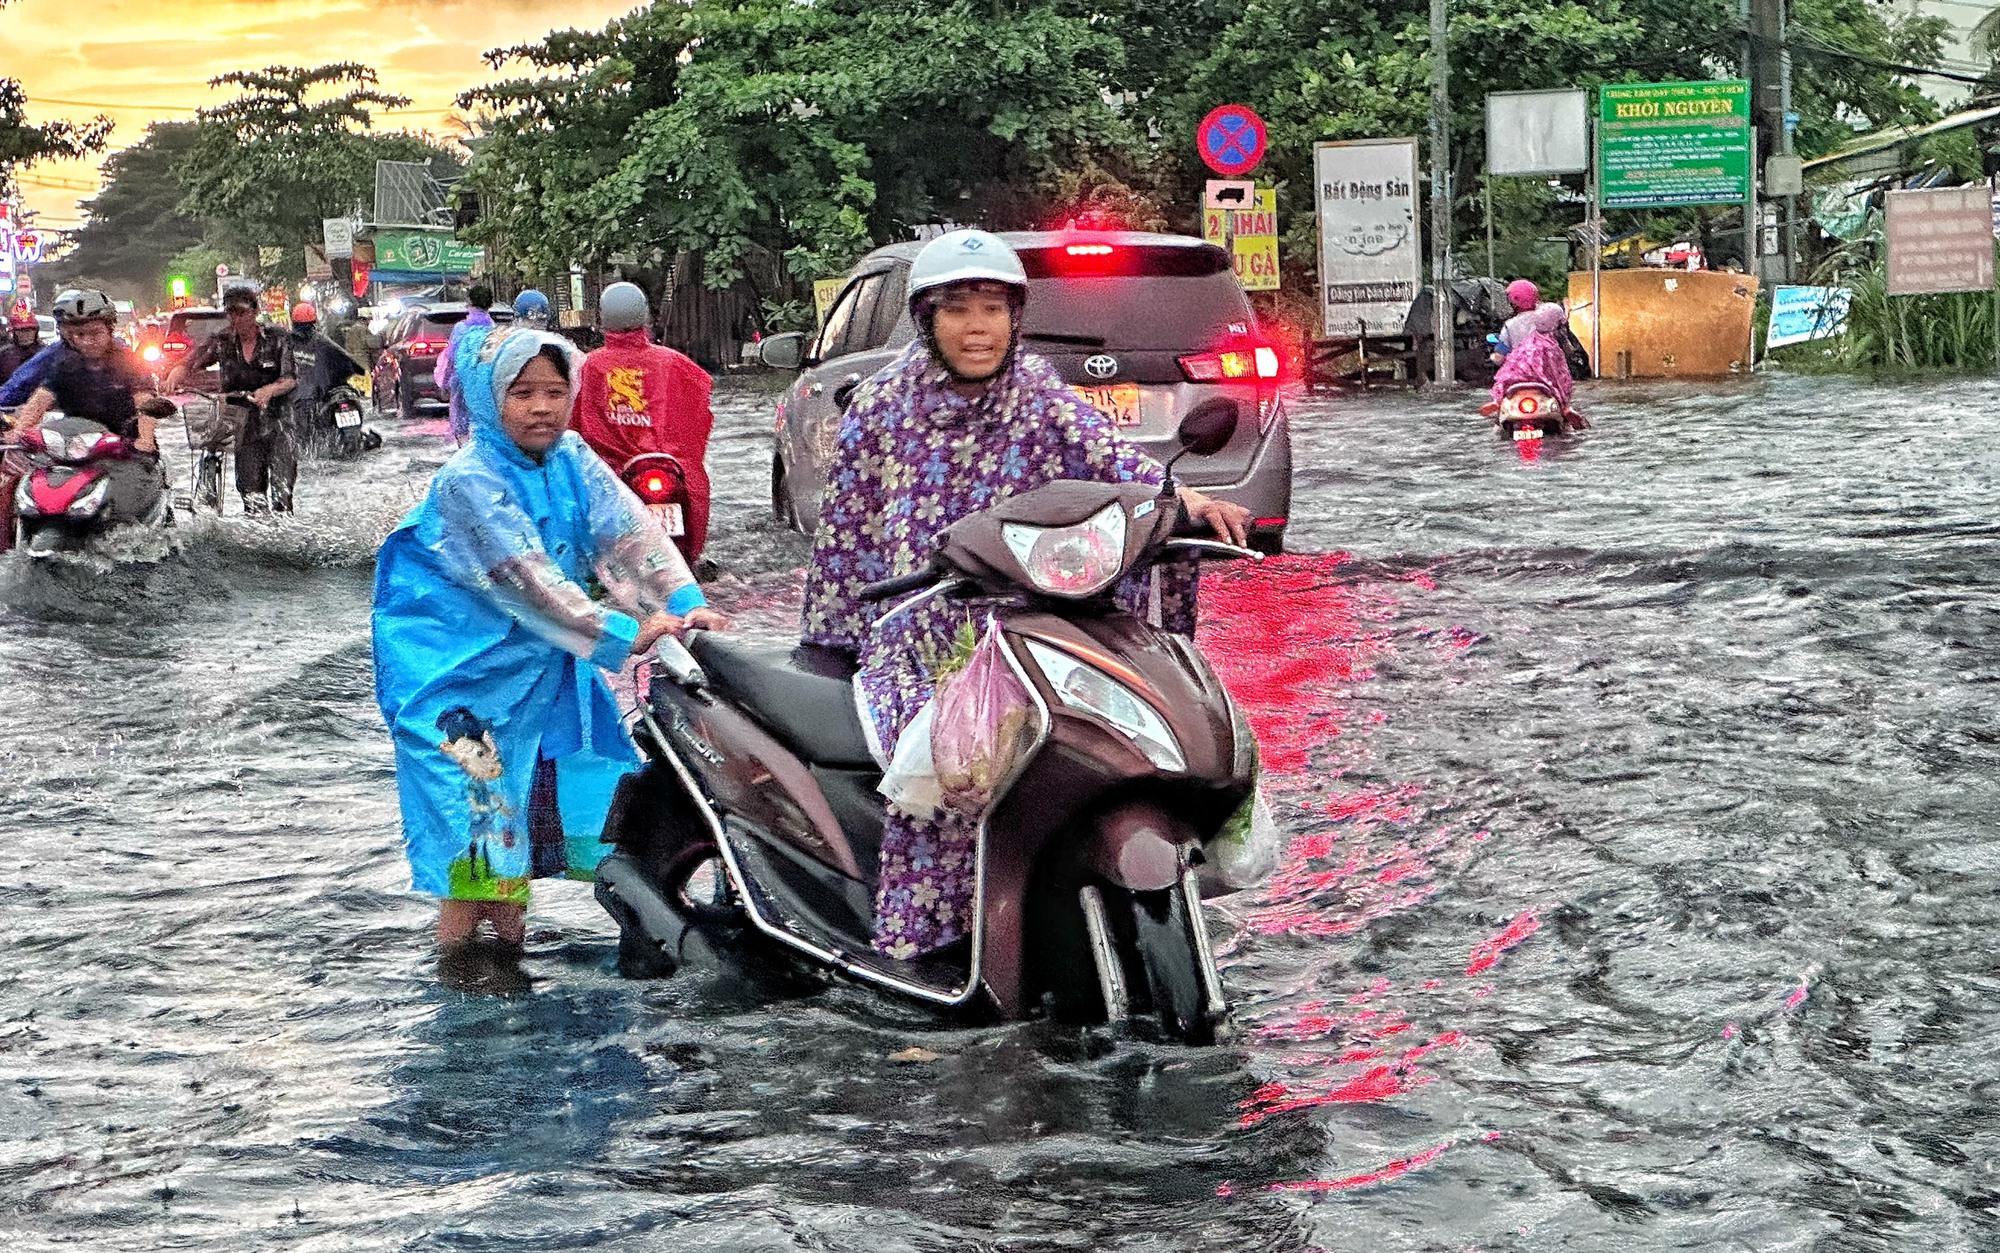 Chiều nay, TP.HCM xuất hiện mưa lớn: Đường mênh mông 'biển nước', xe chết máy la liệt - Ảnh 2.